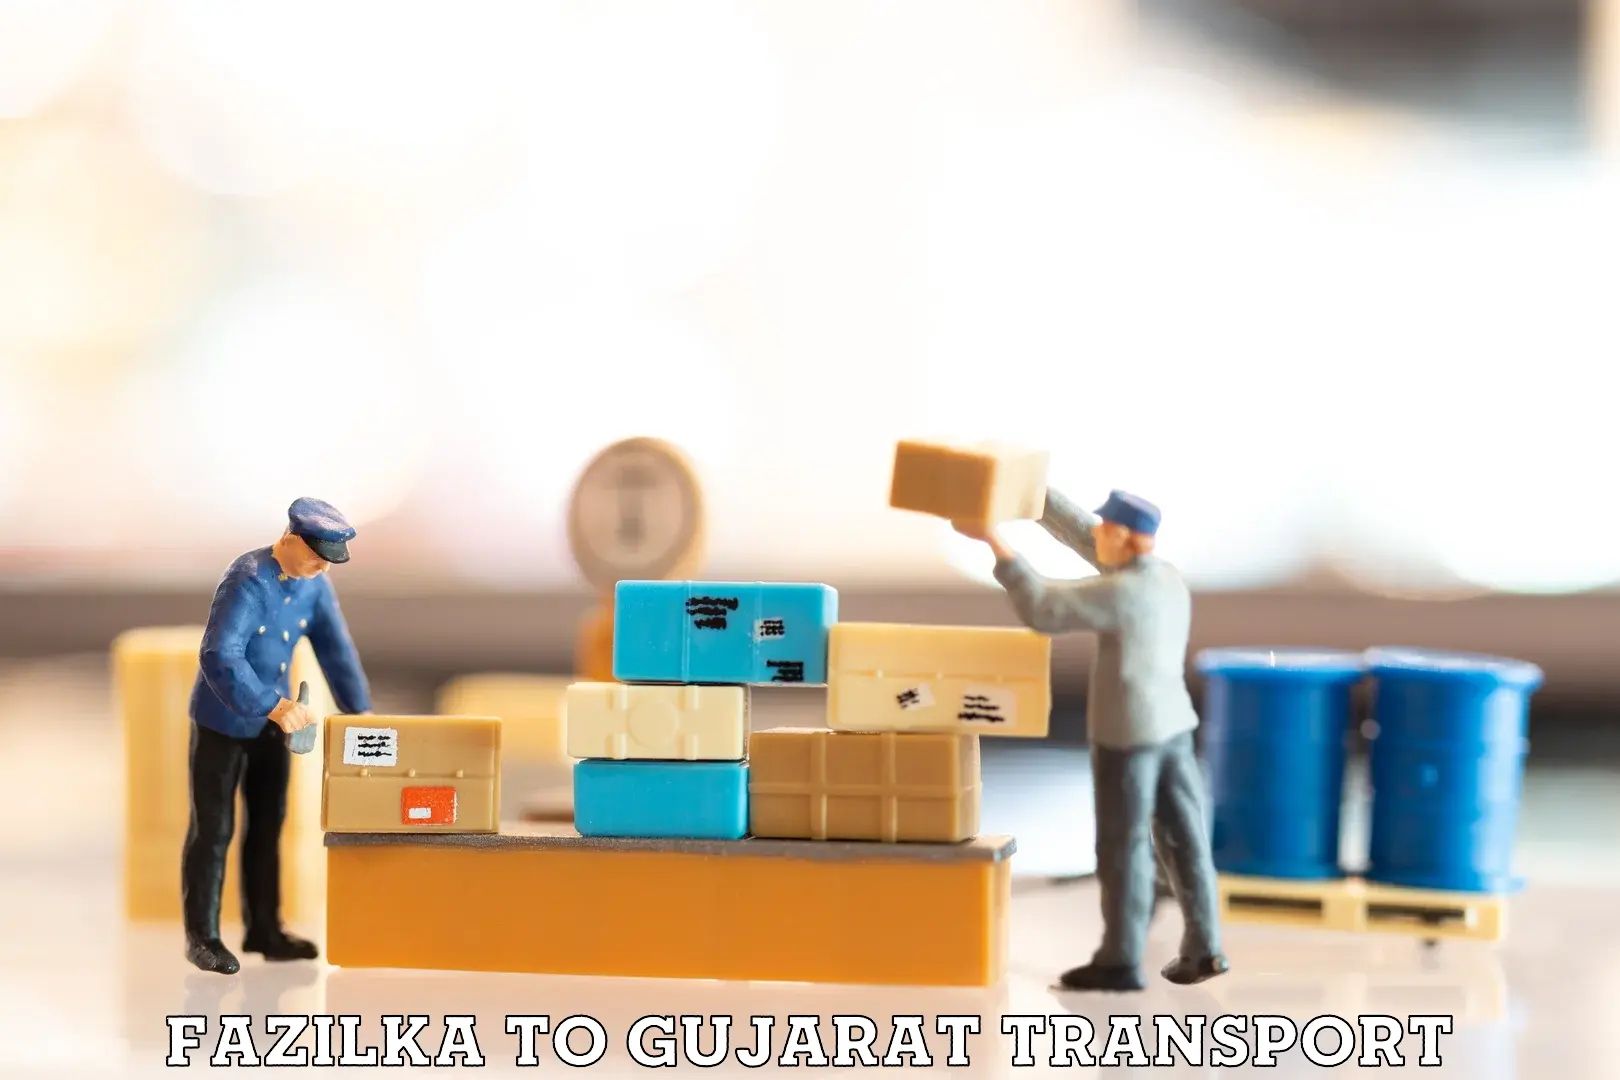 Two wheeler parcel service Fazilka to Gujarat